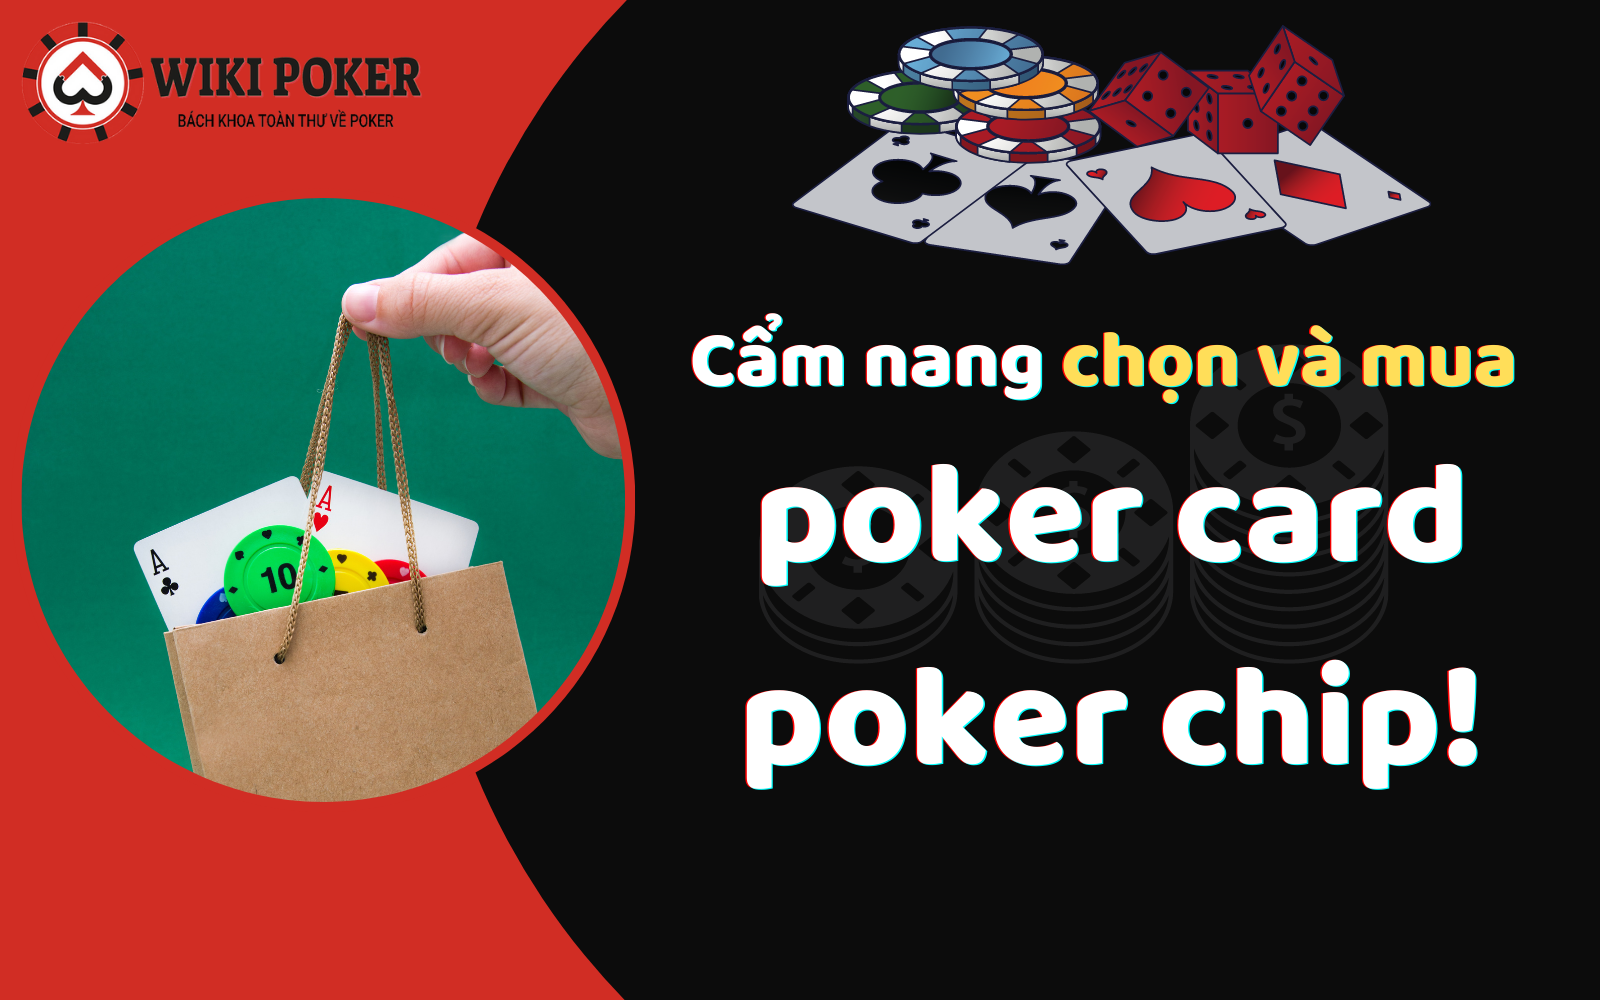 Cẩm nang chọn và mua poker card, poker chip